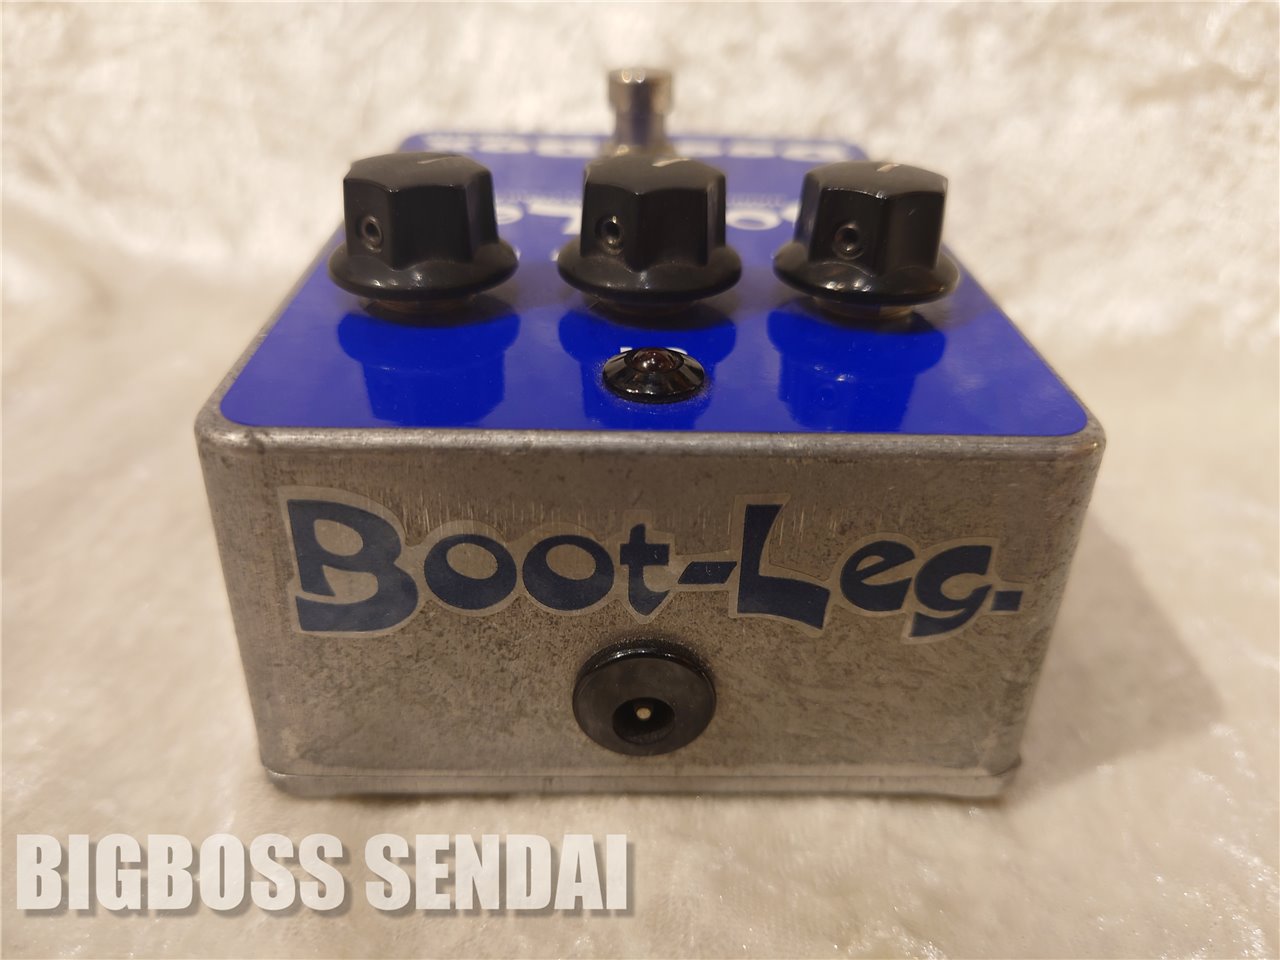 【即納可能/訳アリ特価】Boot-Leg DBX-1.0 Deep Box 仙台店 【 BIG SUMMER SALE!! 開催中 | 7月1日(MON)～7月31日(WED)まで 】